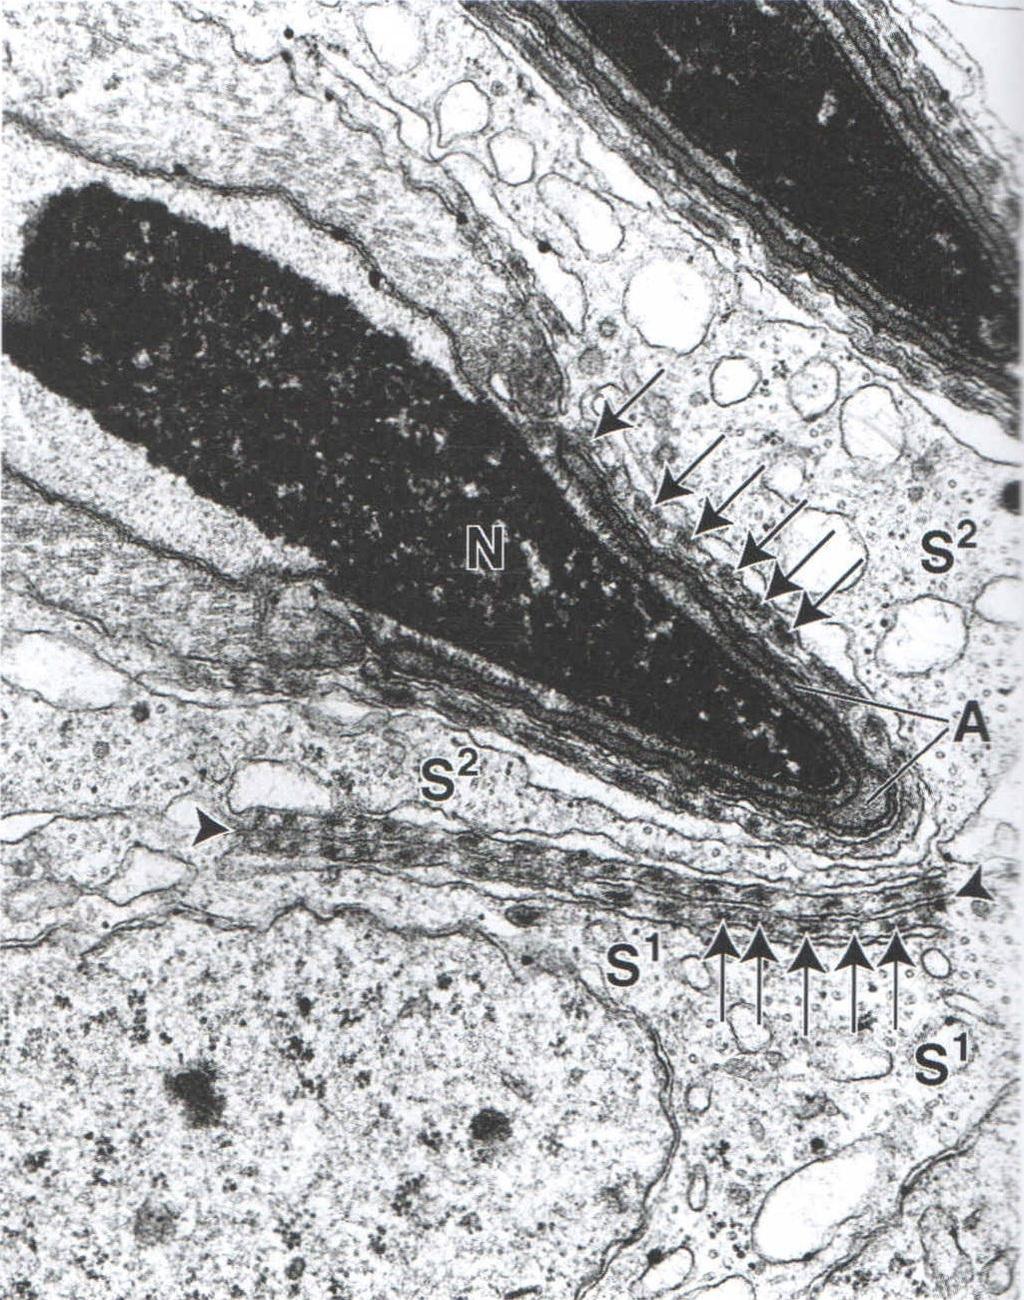 Junções celulares entre espermátide e célula Sertoli N= núcleo espermátide A= acromossomo Setas= feixes de microfilamentos Cortados transversalmente da célula de Sertoli S1= uma